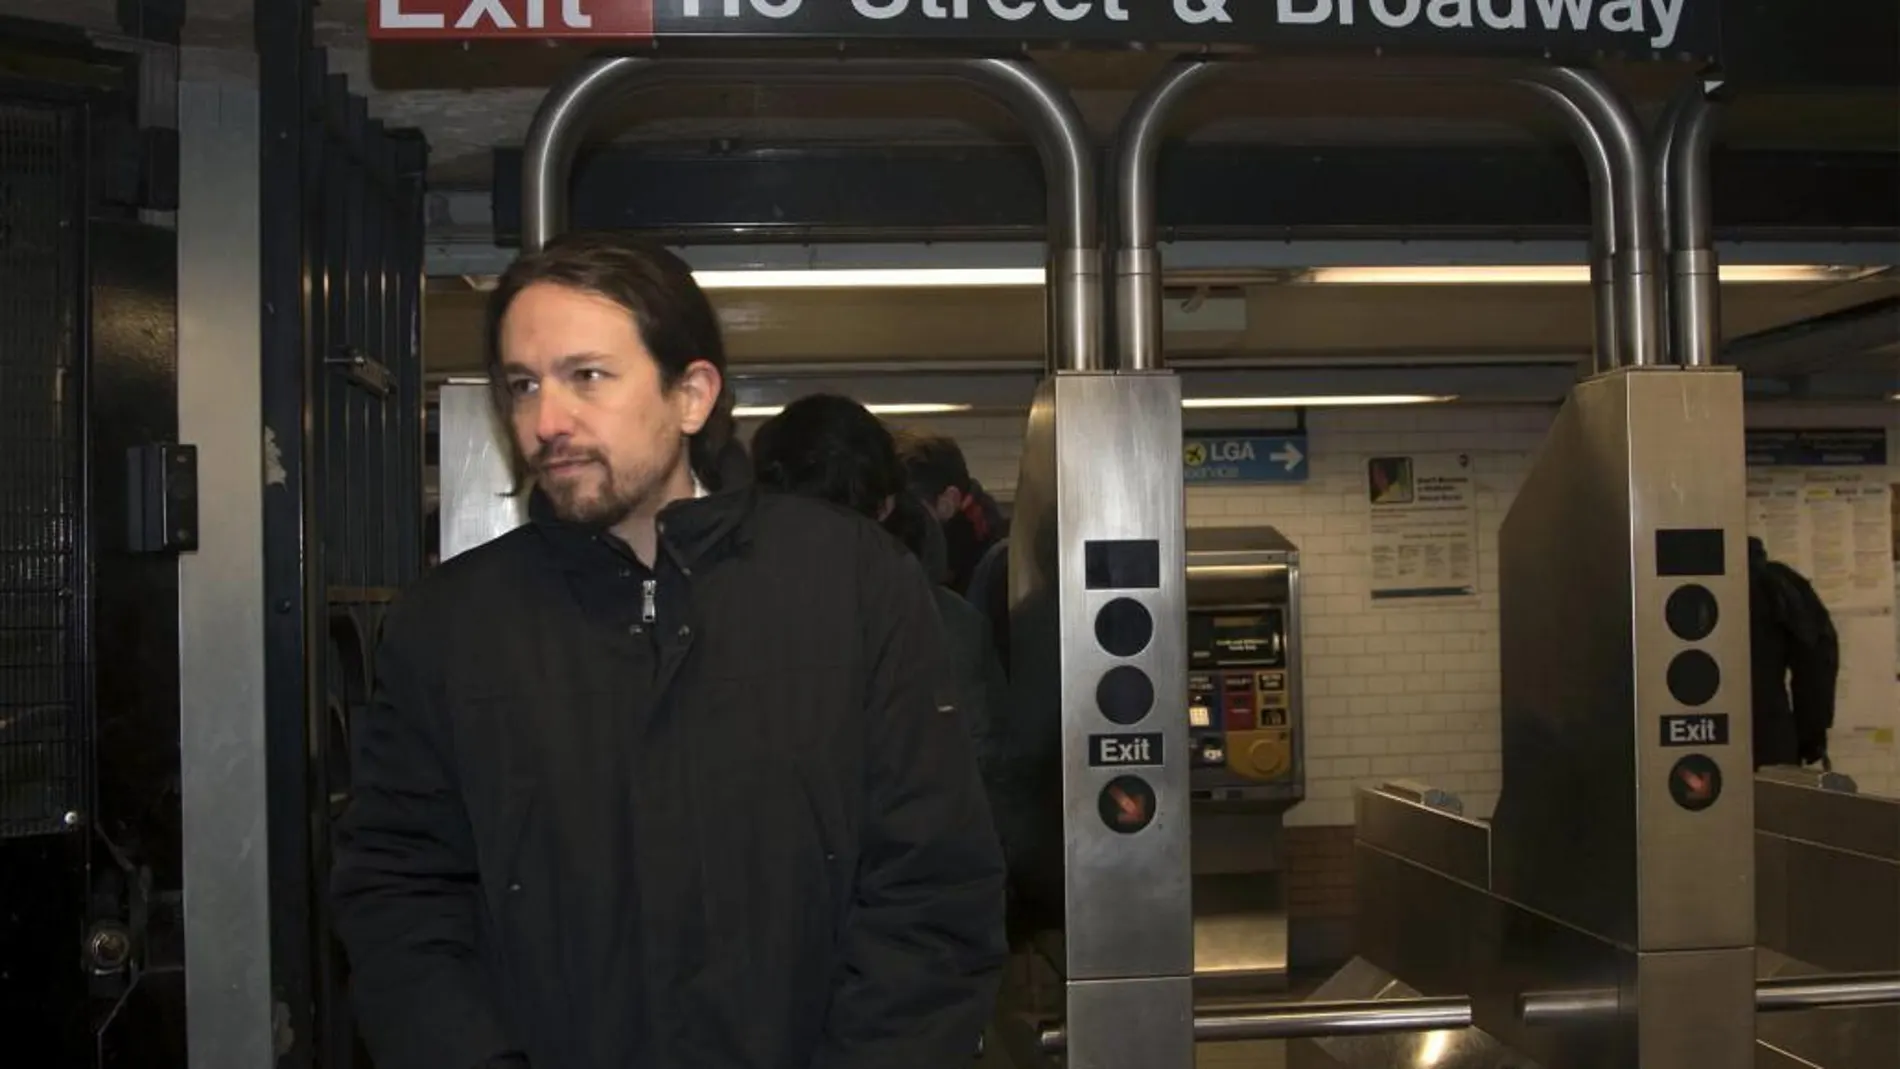 El líder de Podemos, Pablo Iglesias, entra al metro den Nueva York